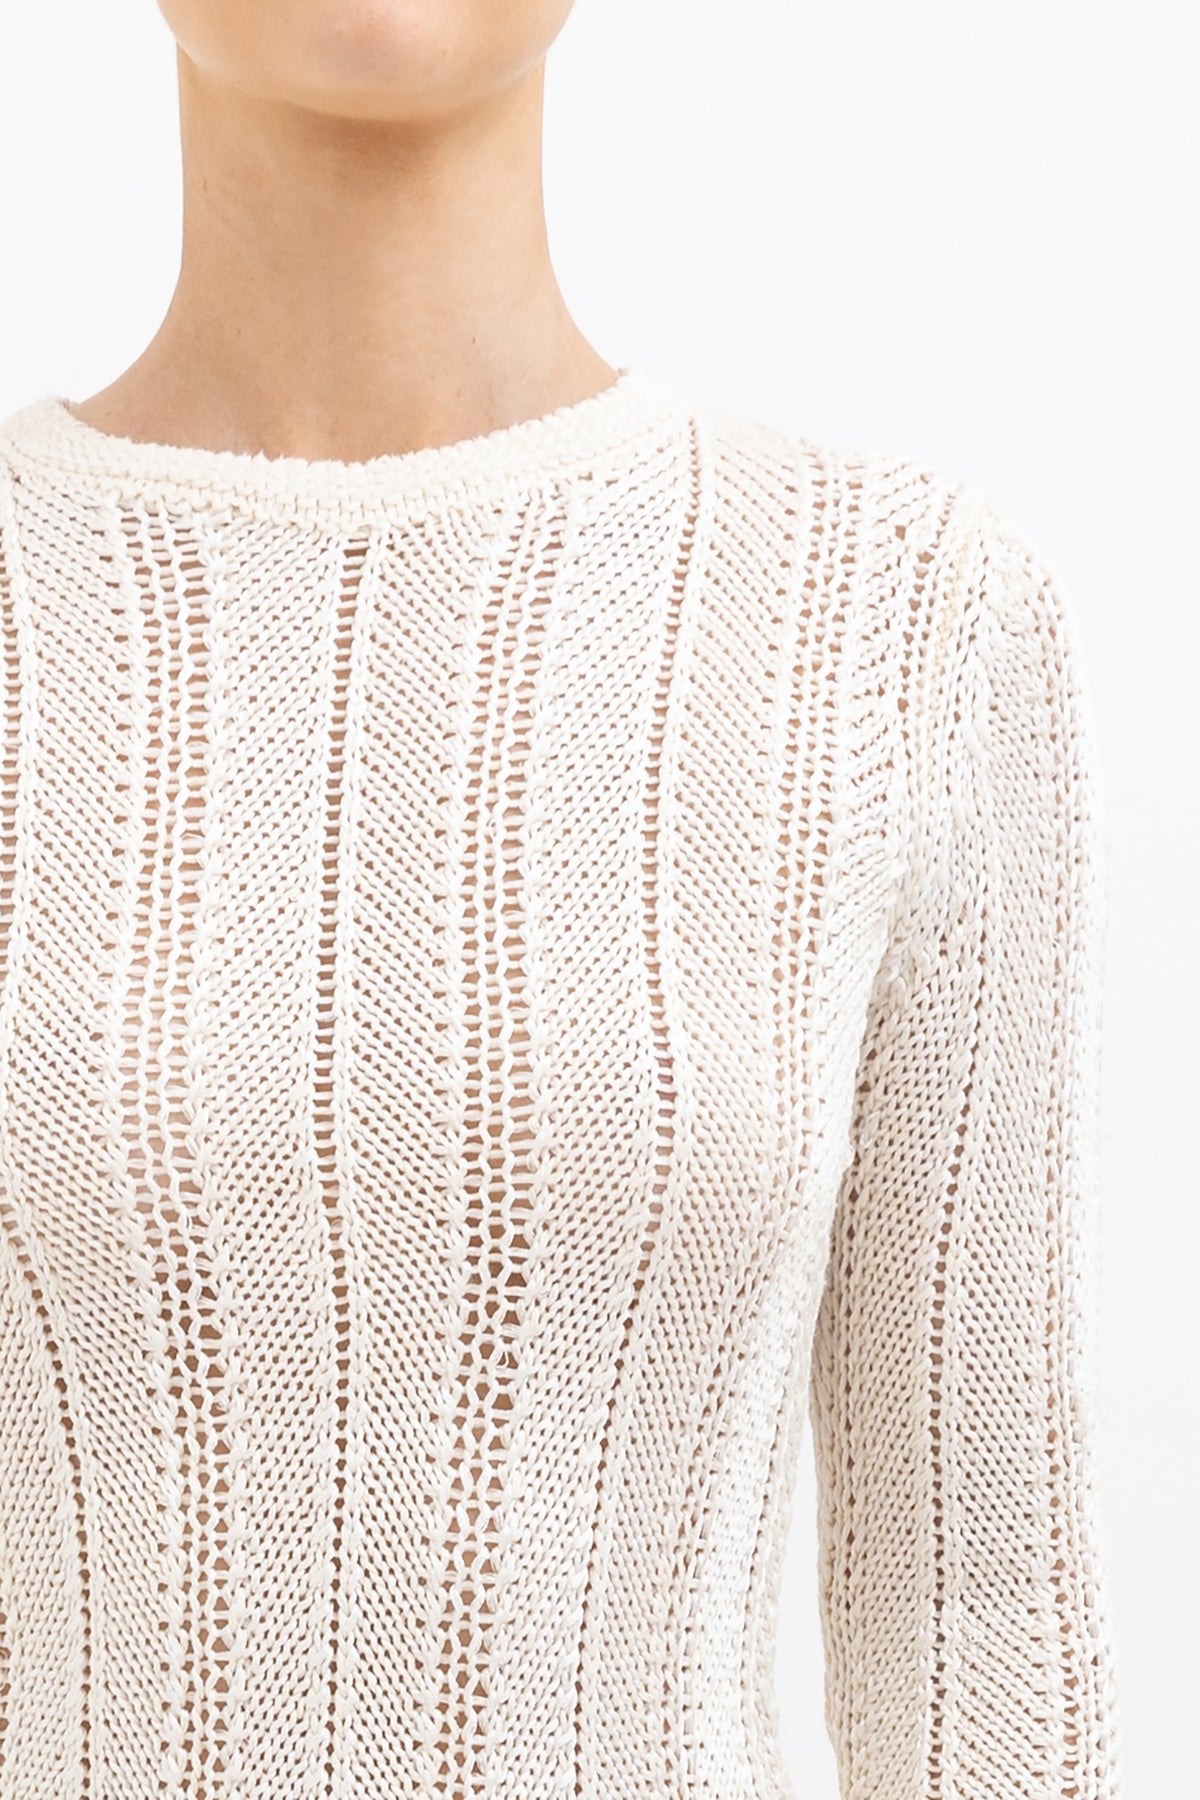 Crochet Knit Long Sleeve Top & Skirt Set